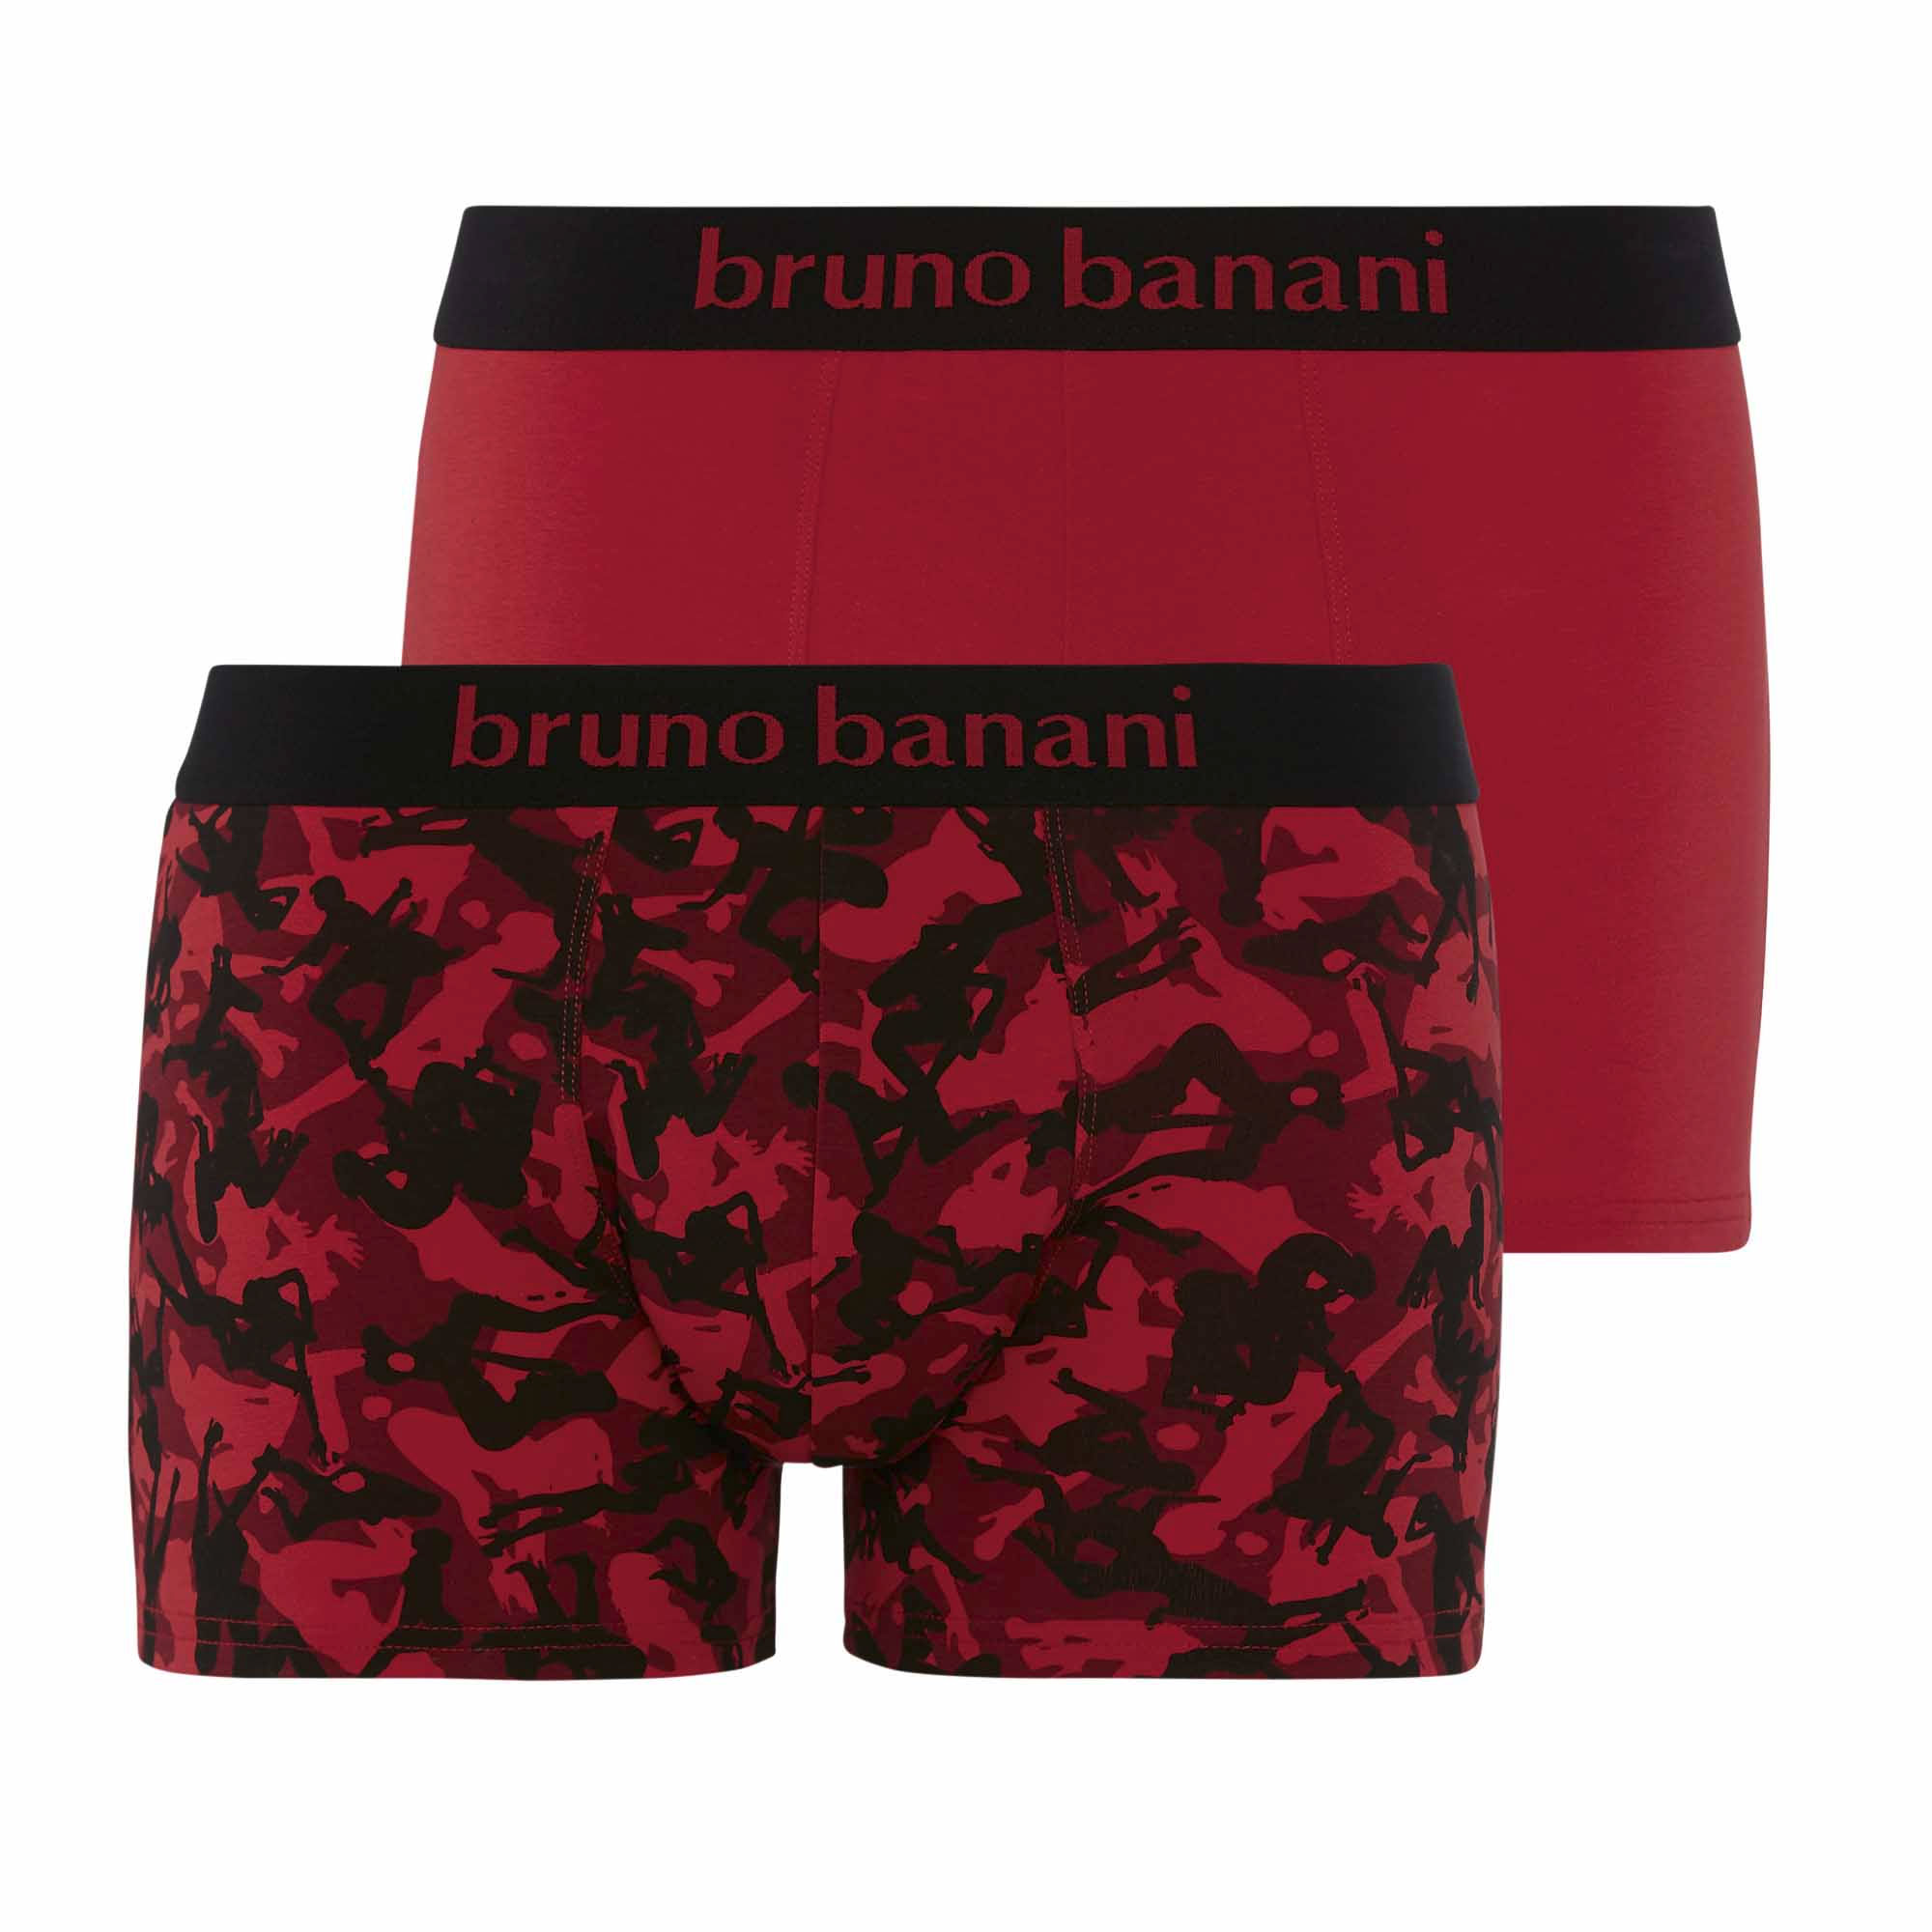 Комплект боксеров (2 шт) 2201-2369/4407 Burlesque Bruno banani рис. 1